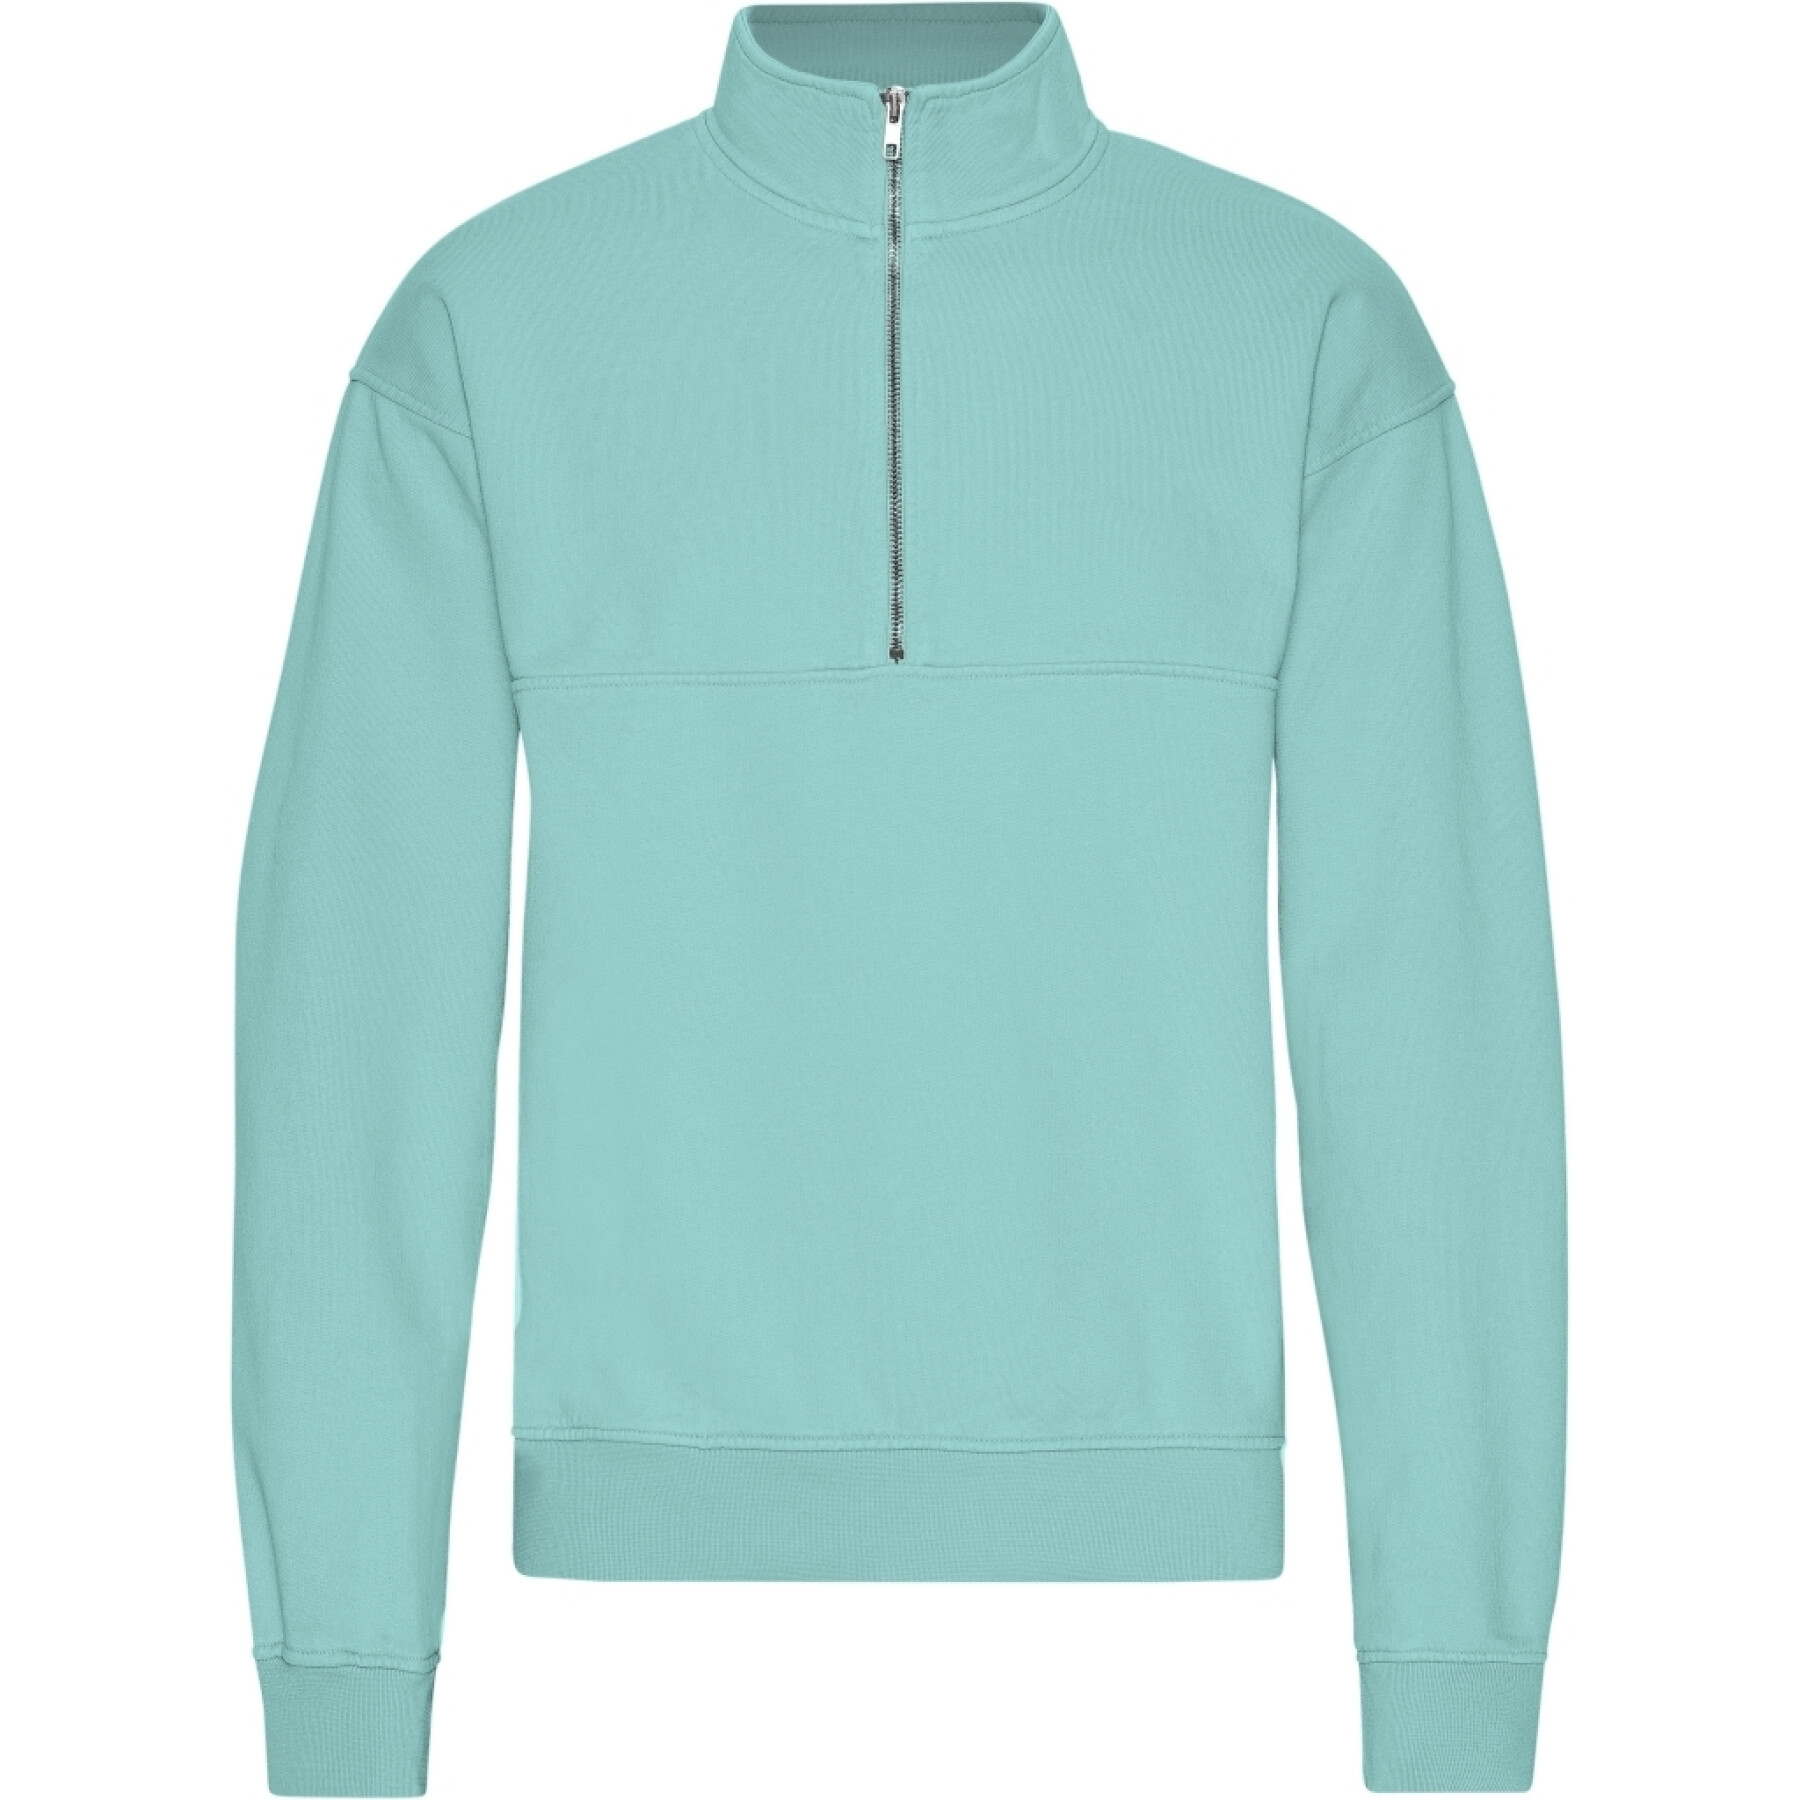 1/4 zip sweatshirt Colorful Standard Organic Teal Blue